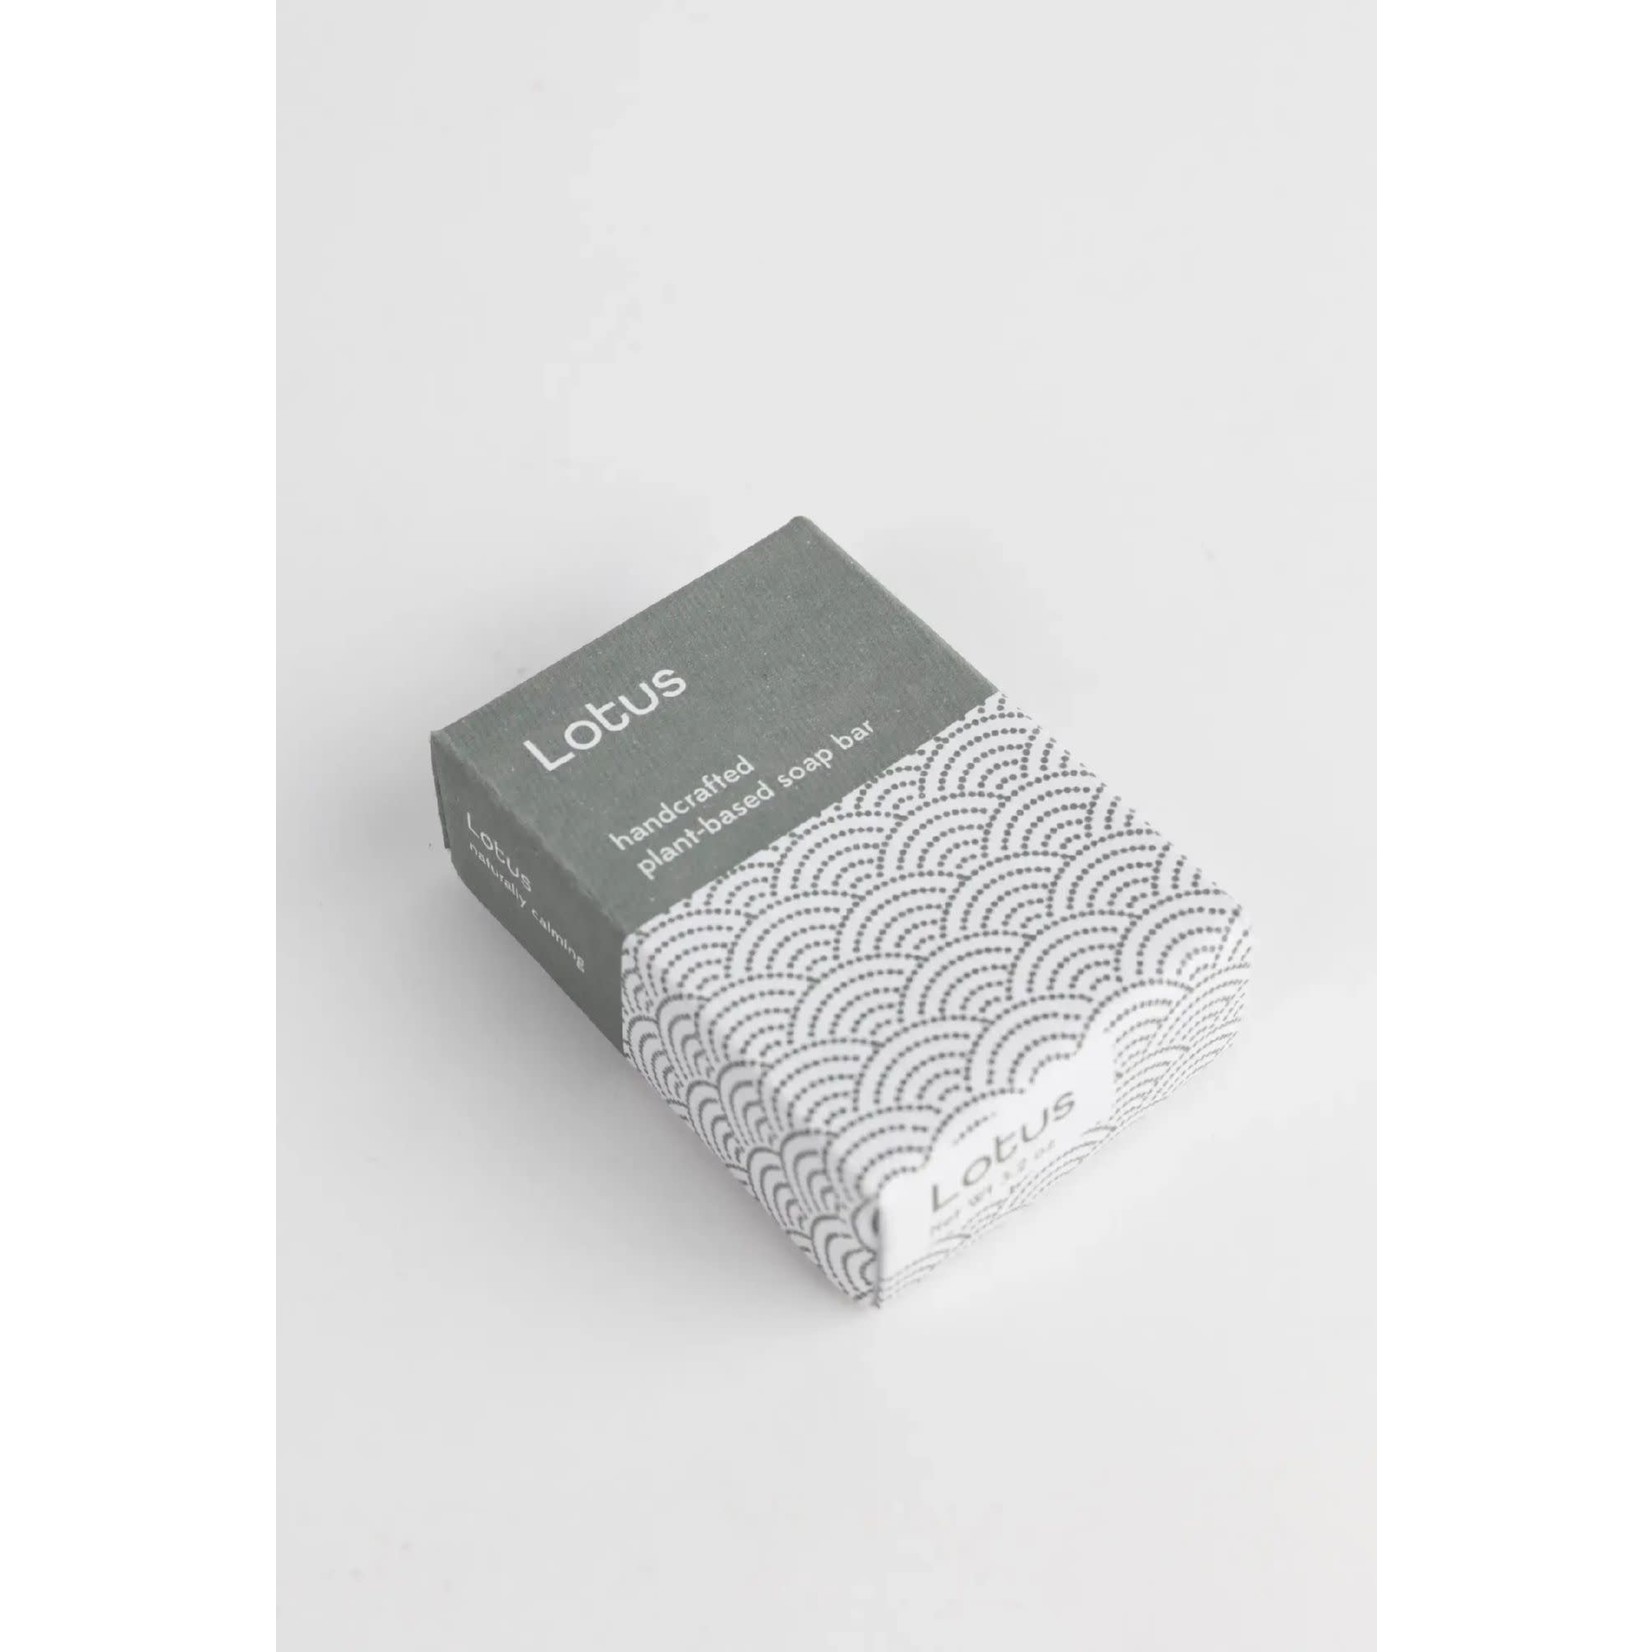 India Soap Lotus M/5 3.2 Oz Cream/Teal